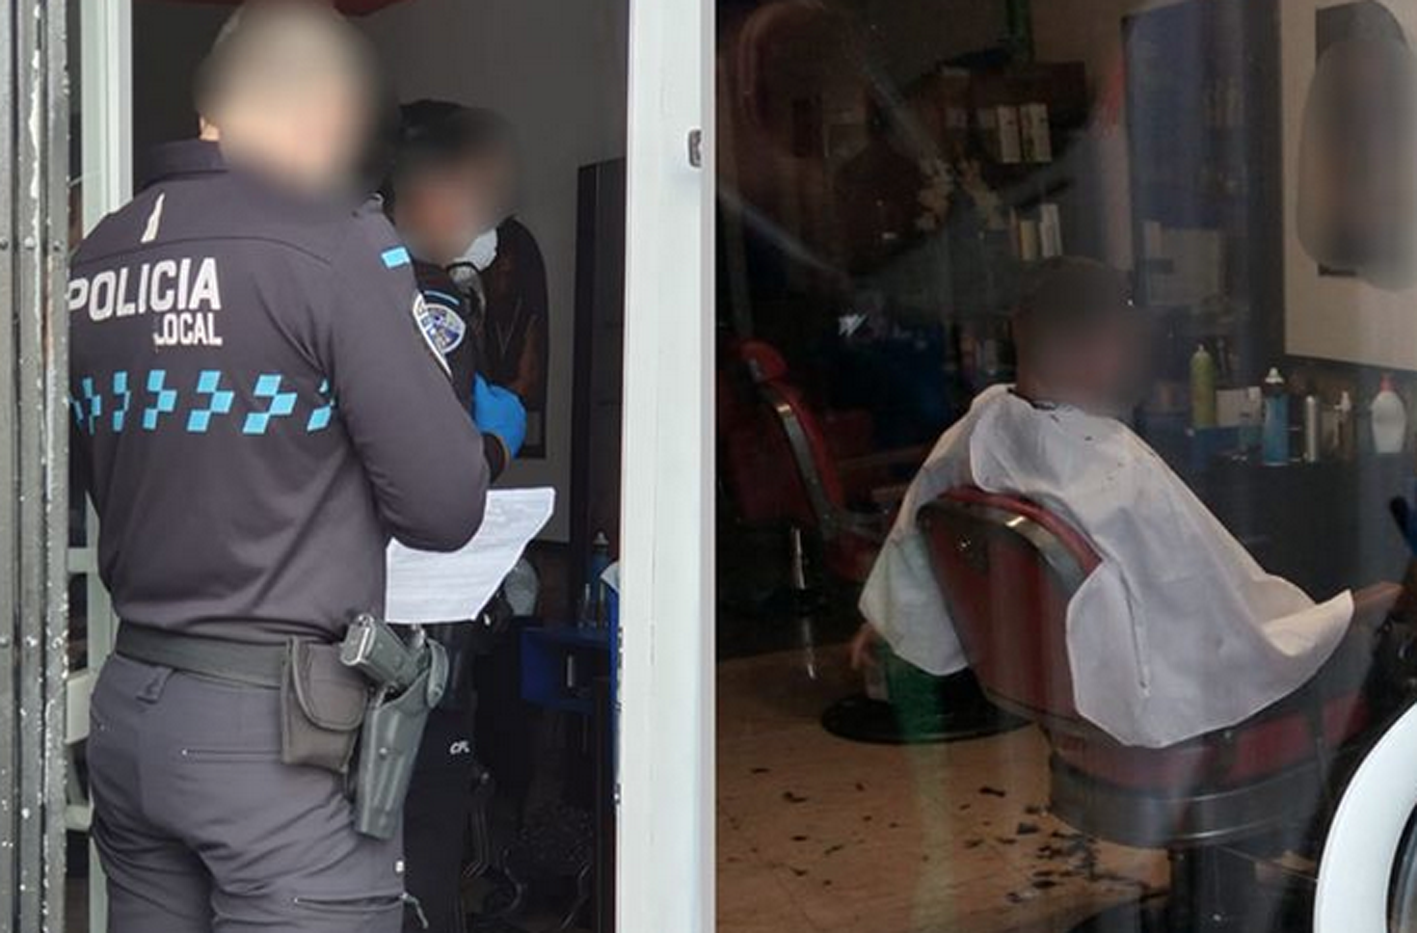 La Policía Local de Toledo pilló una peluquería abierta en el barrio de Palomarejos, con el cierre bajado pero con dos clientes dentro. Fueron denunciados tanto el peluquero como los clientes.